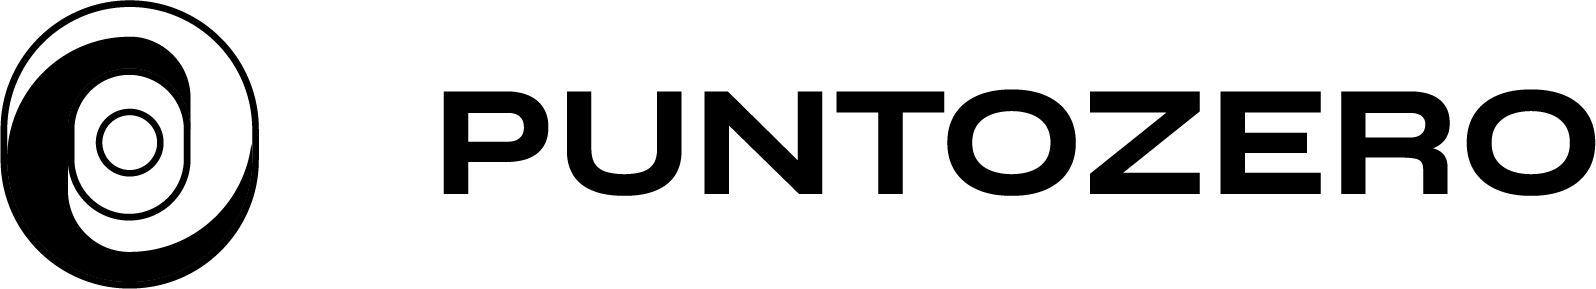 Puntozero logo